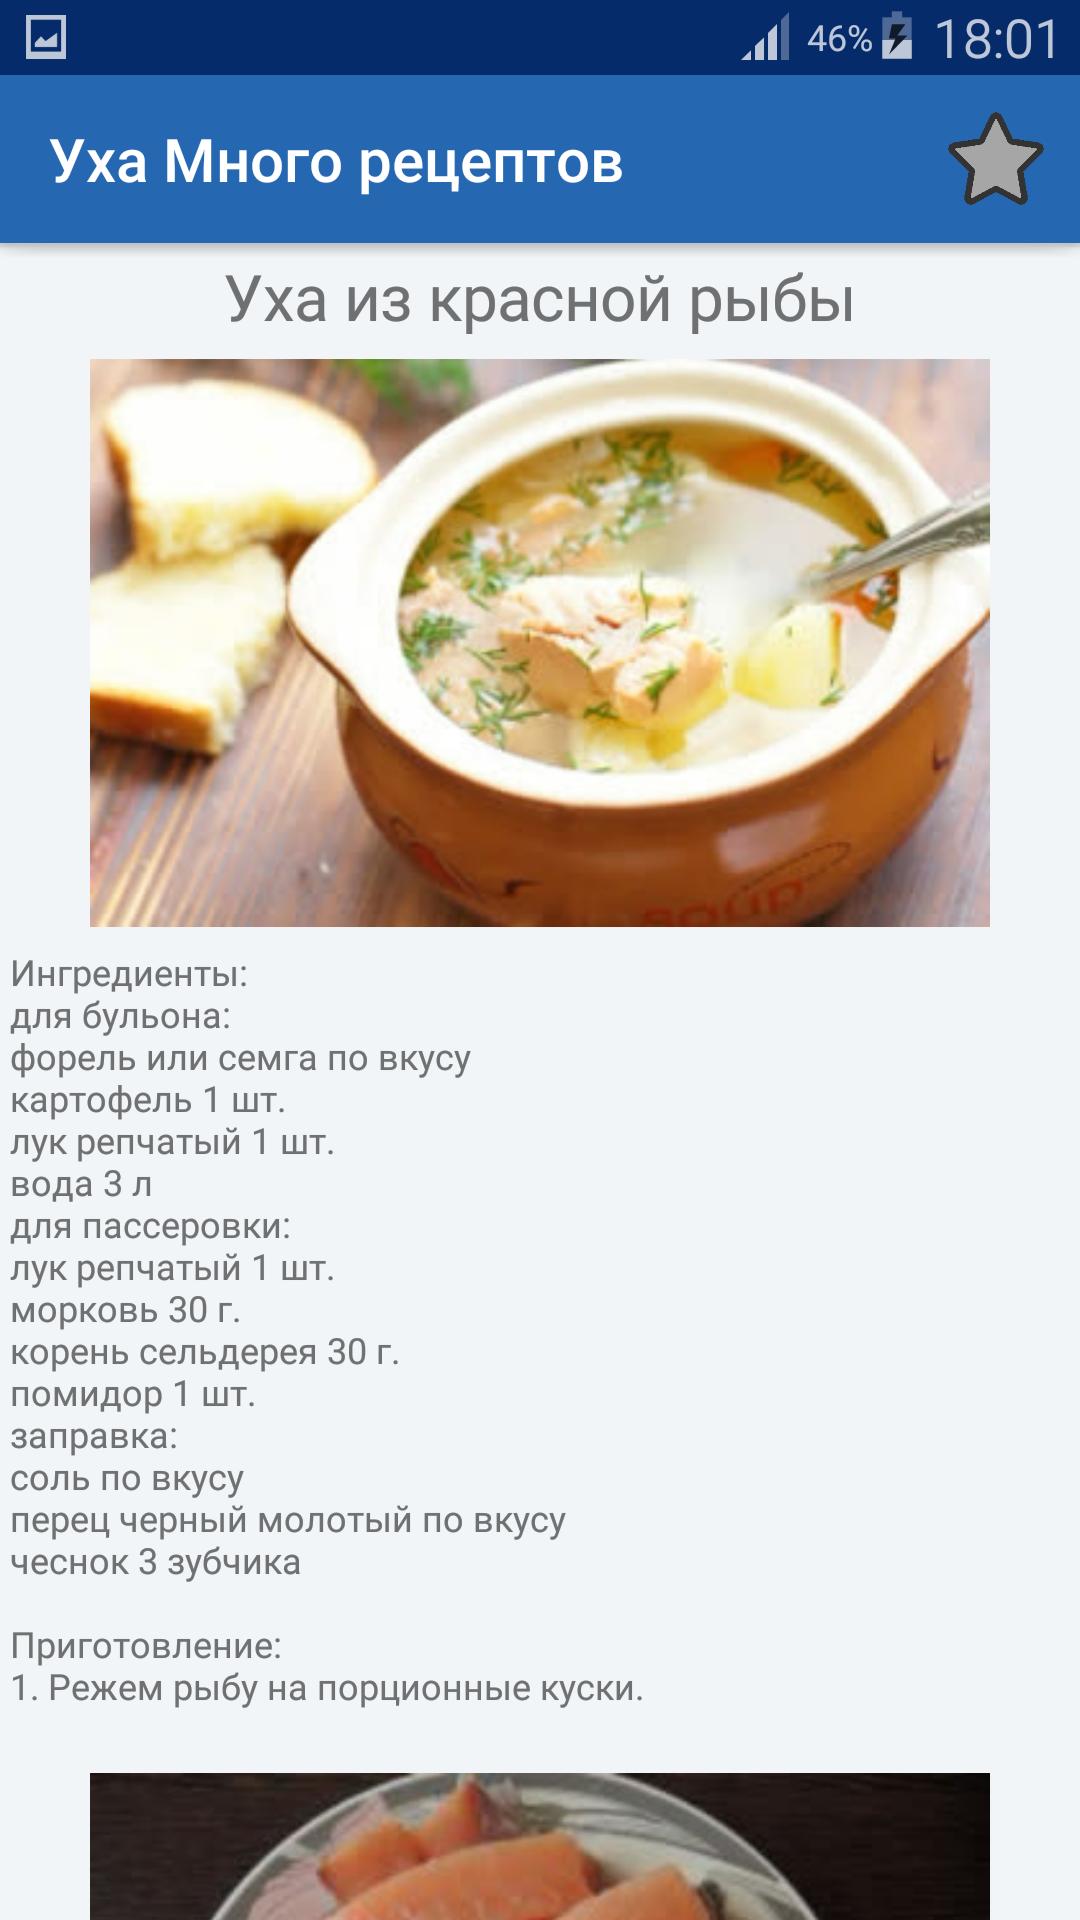 ✅ классические рецепты ухи — более 50 рецептов! - fishyarm.ru